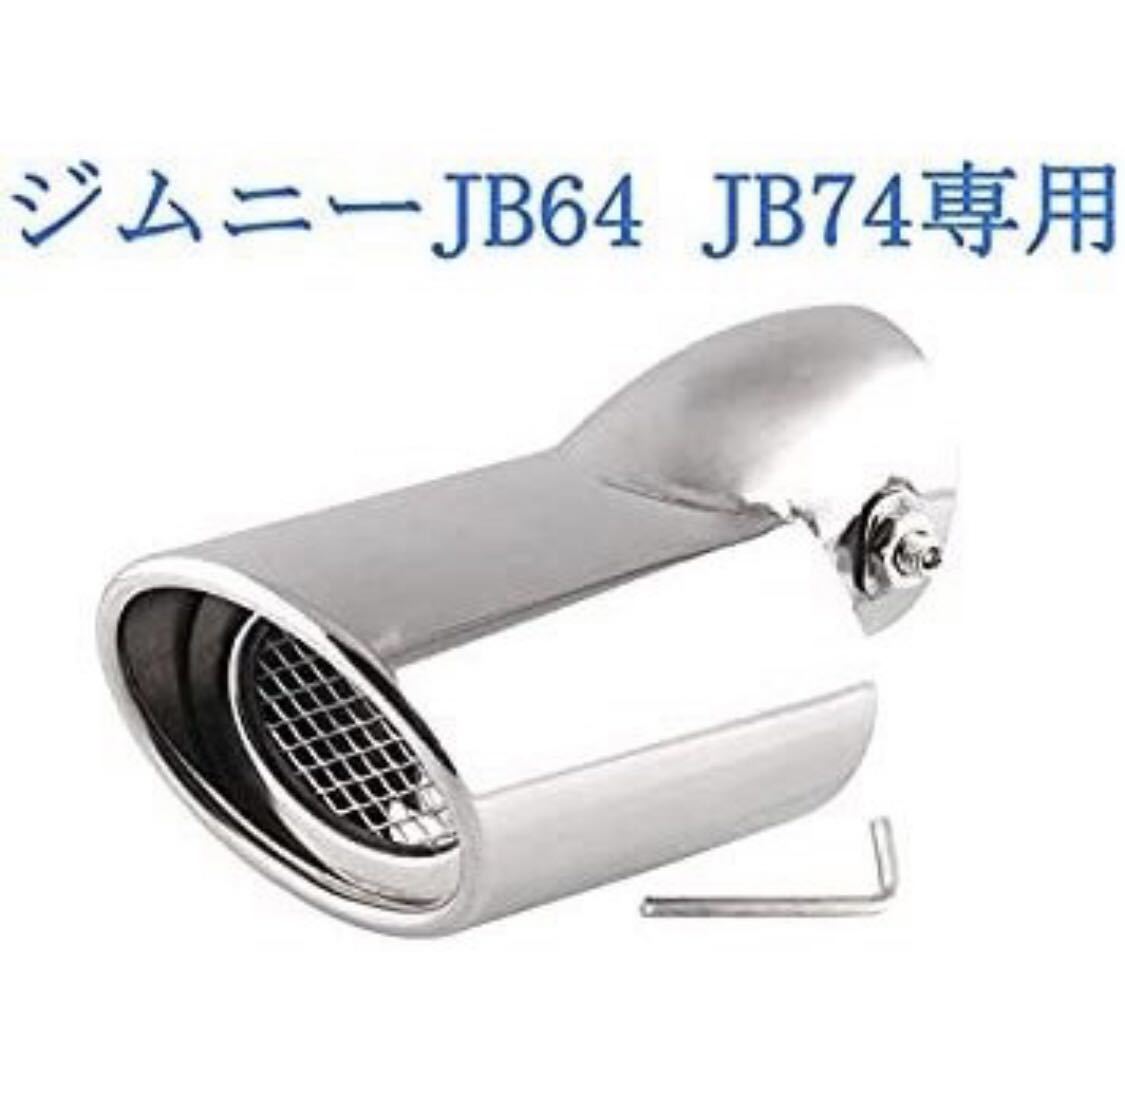 スズキ ジムニー JB64 JB74専用 マフラーカッターシルバー 下向き式 スラッシュカット シングル 簡単取付 後付け 重厚感有り